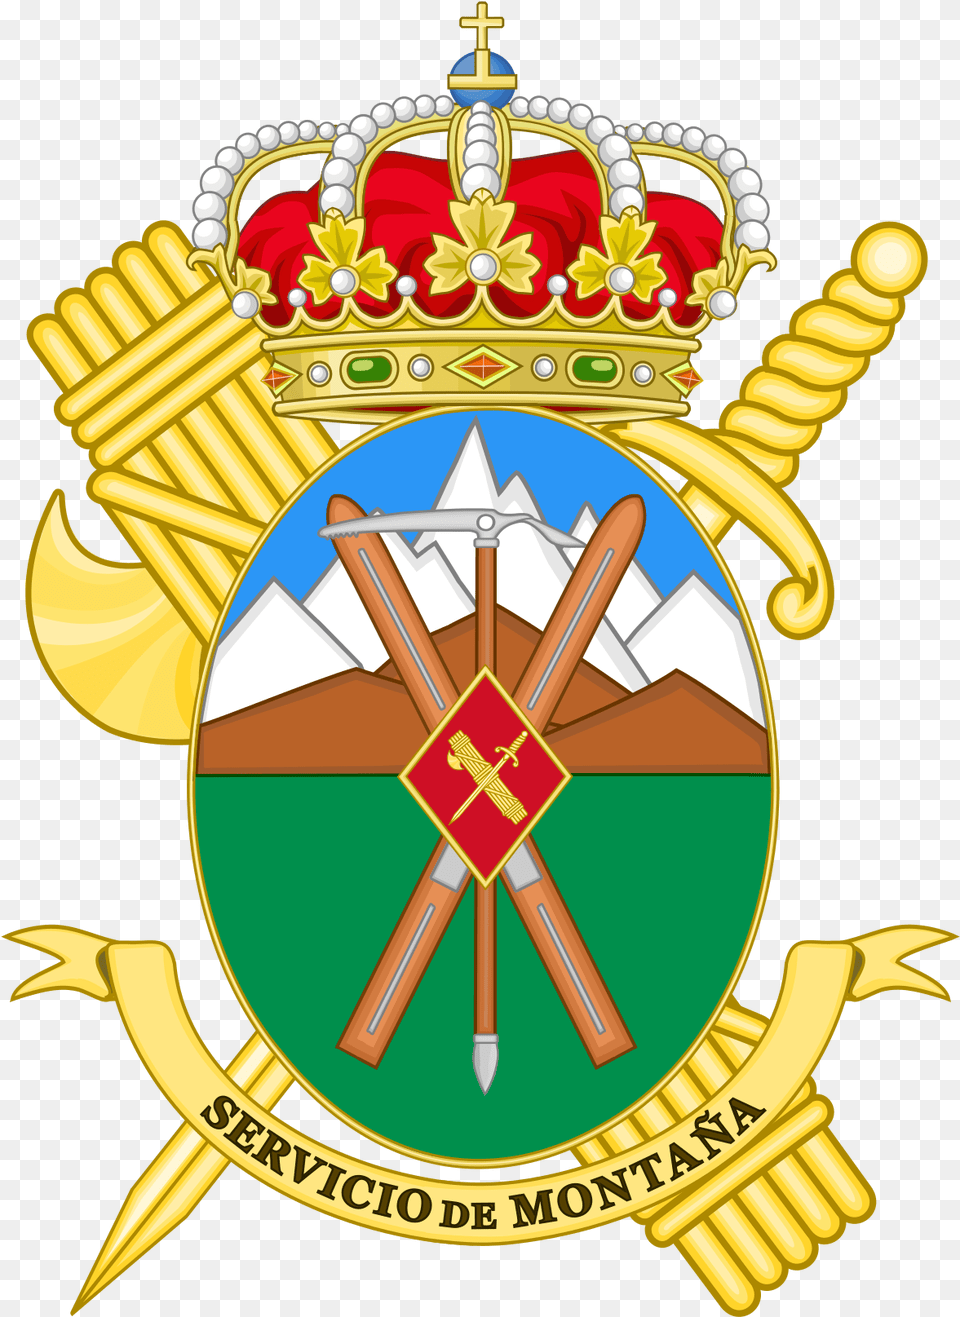 Uco Guardia Civil, Badge, Logo, Symbol, Emblem Free Png Download